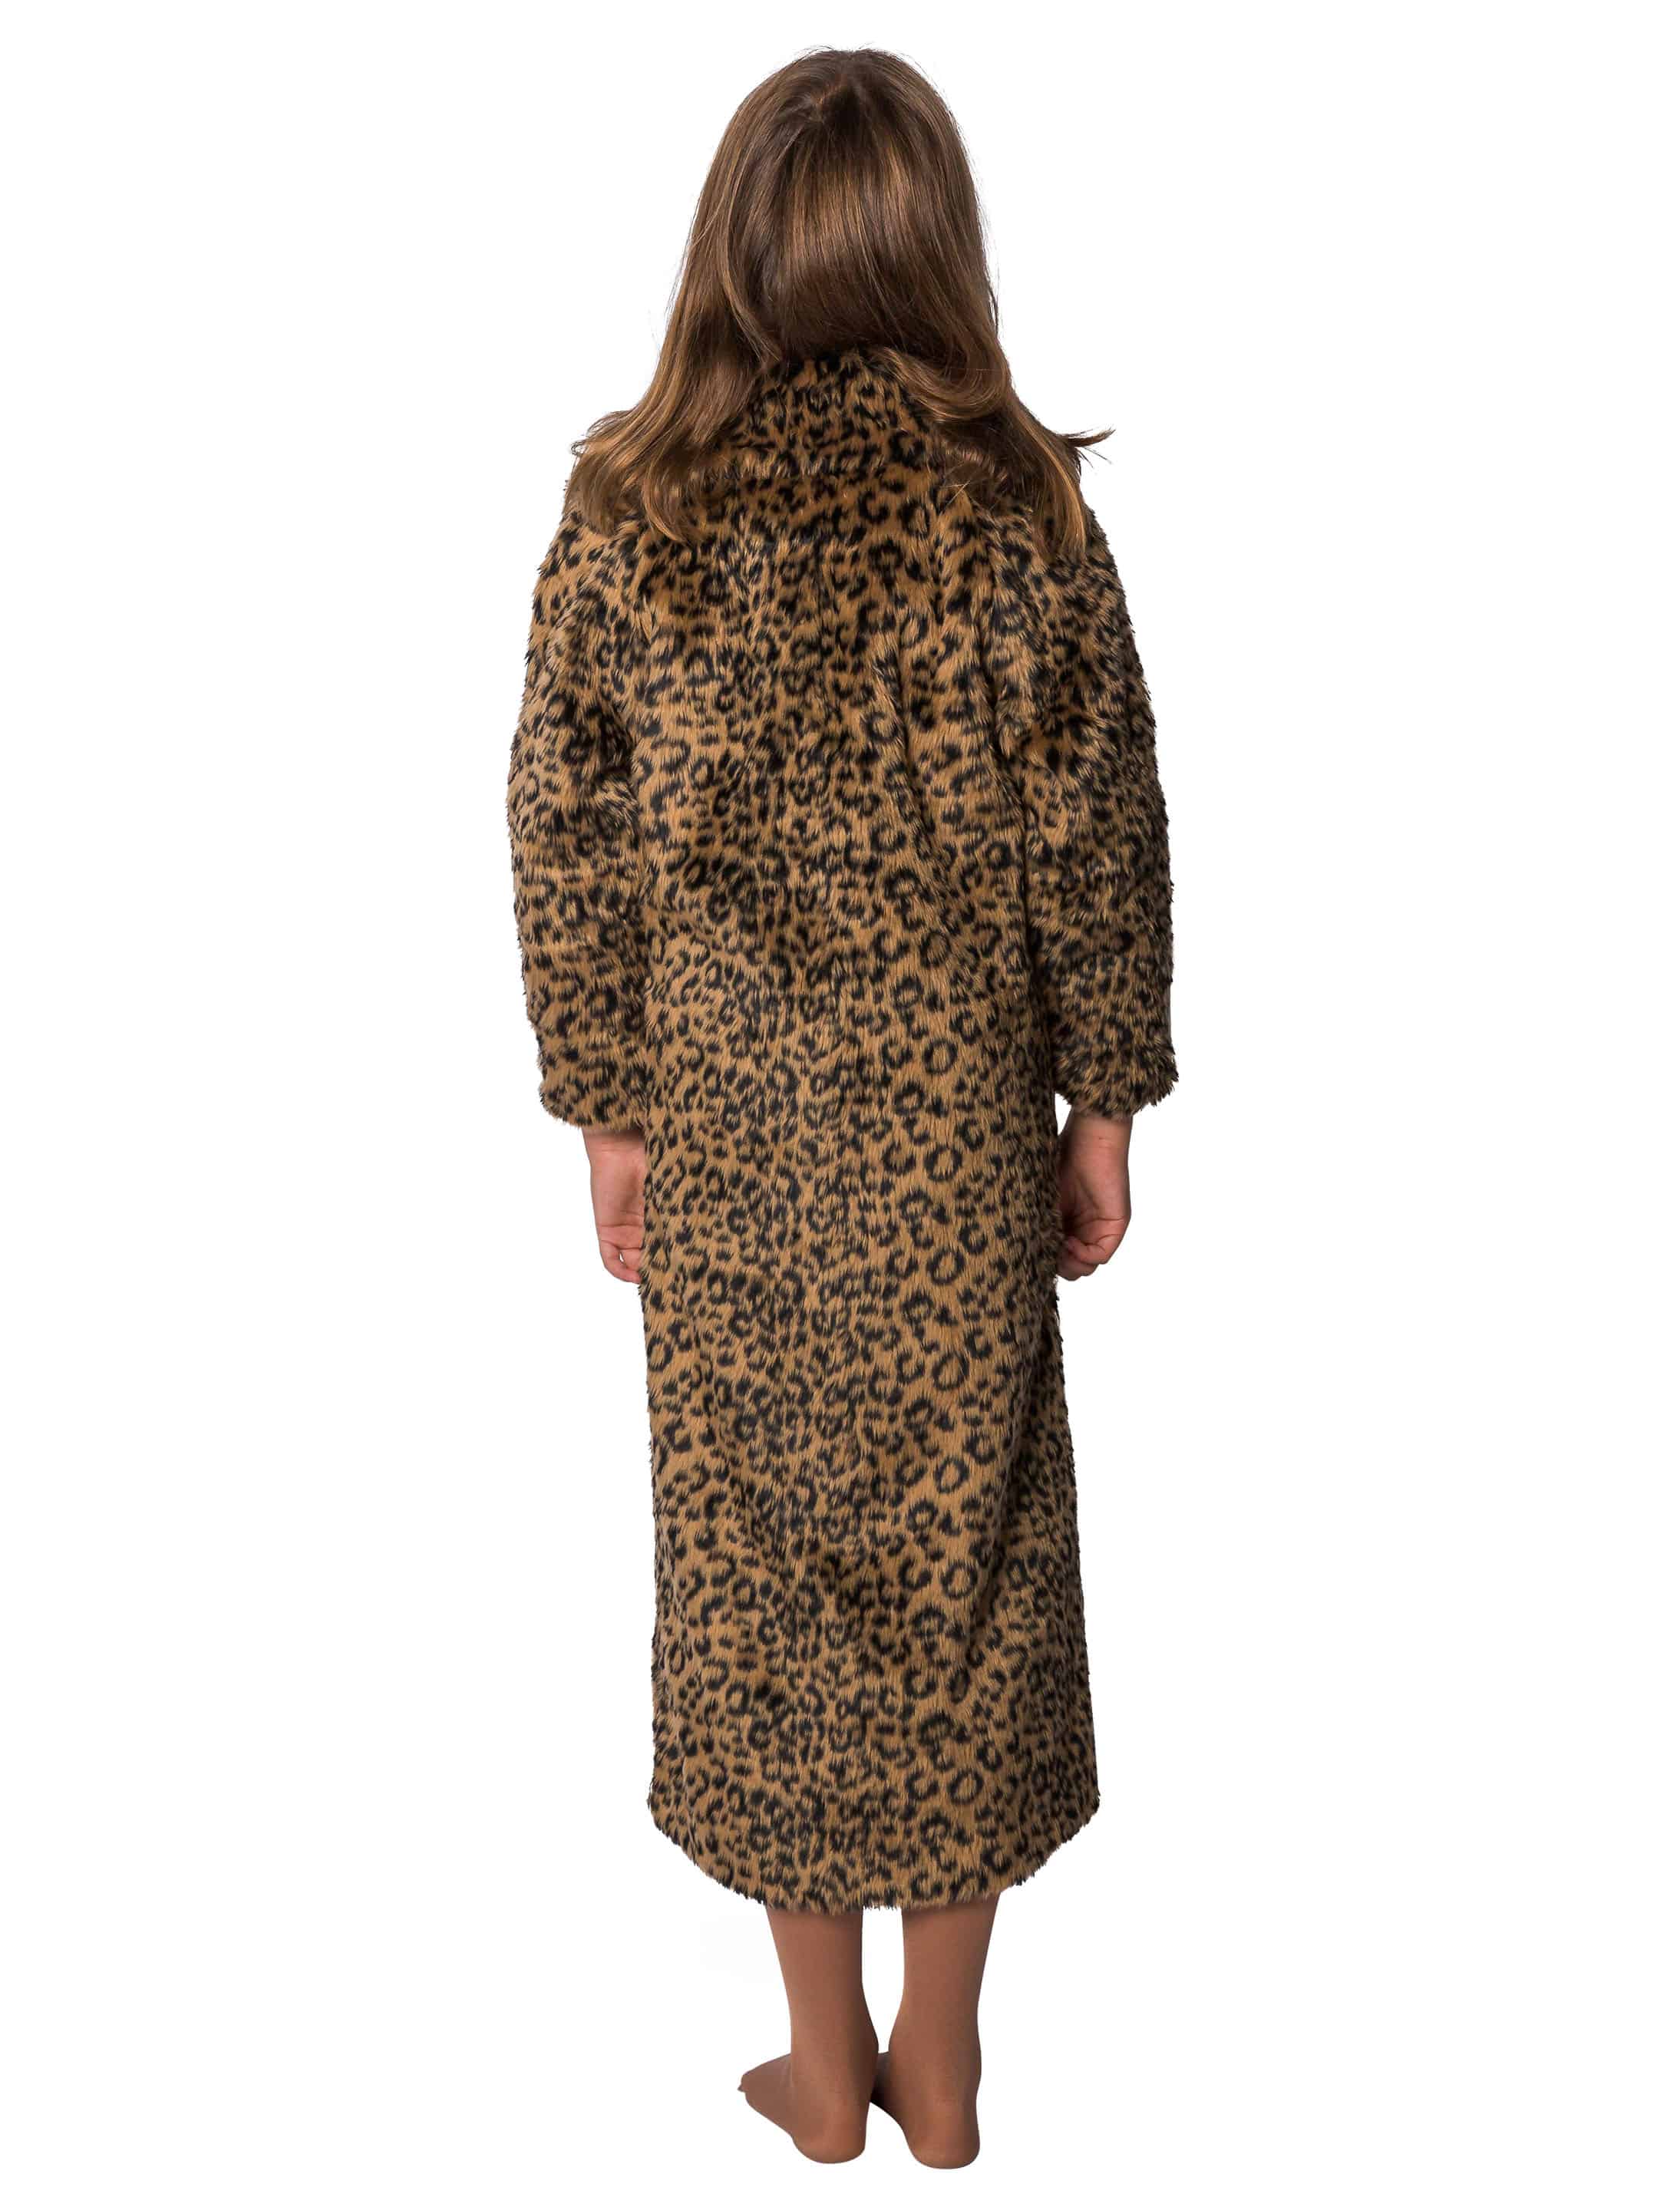 Mantel Kinder Leopardenmuster schwarz/braun 140-152